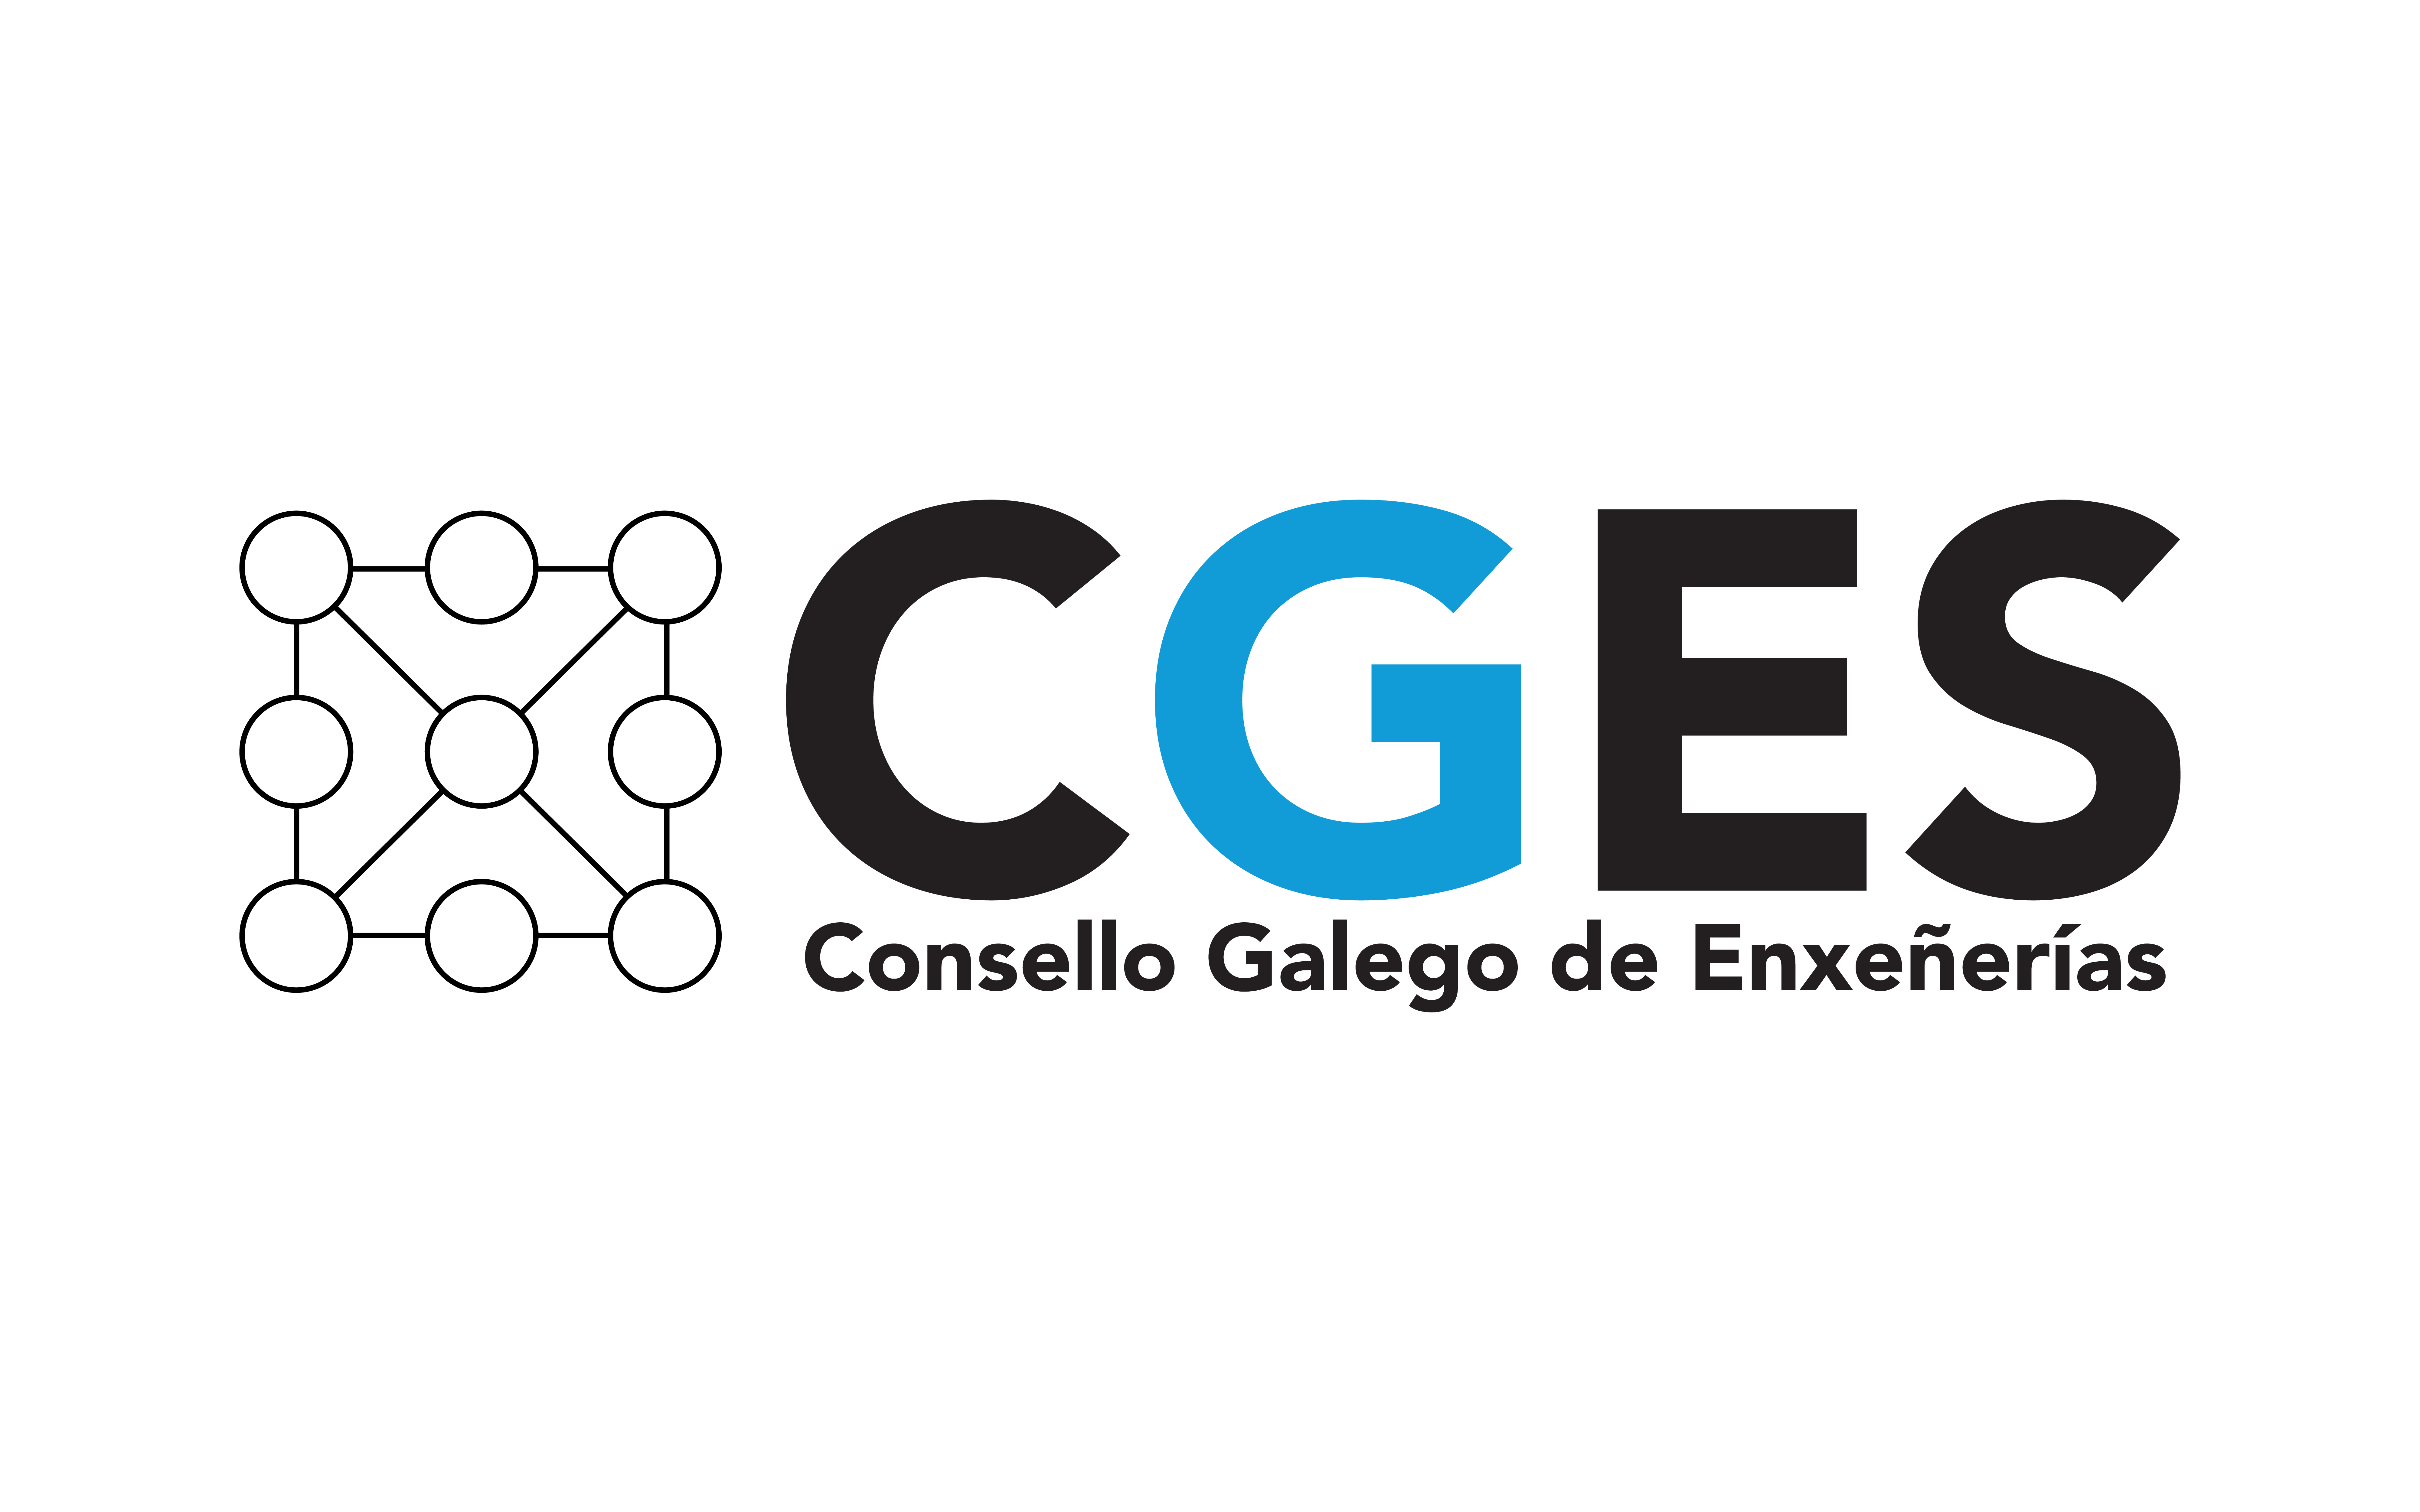 Consello Galego de Enxeñerías